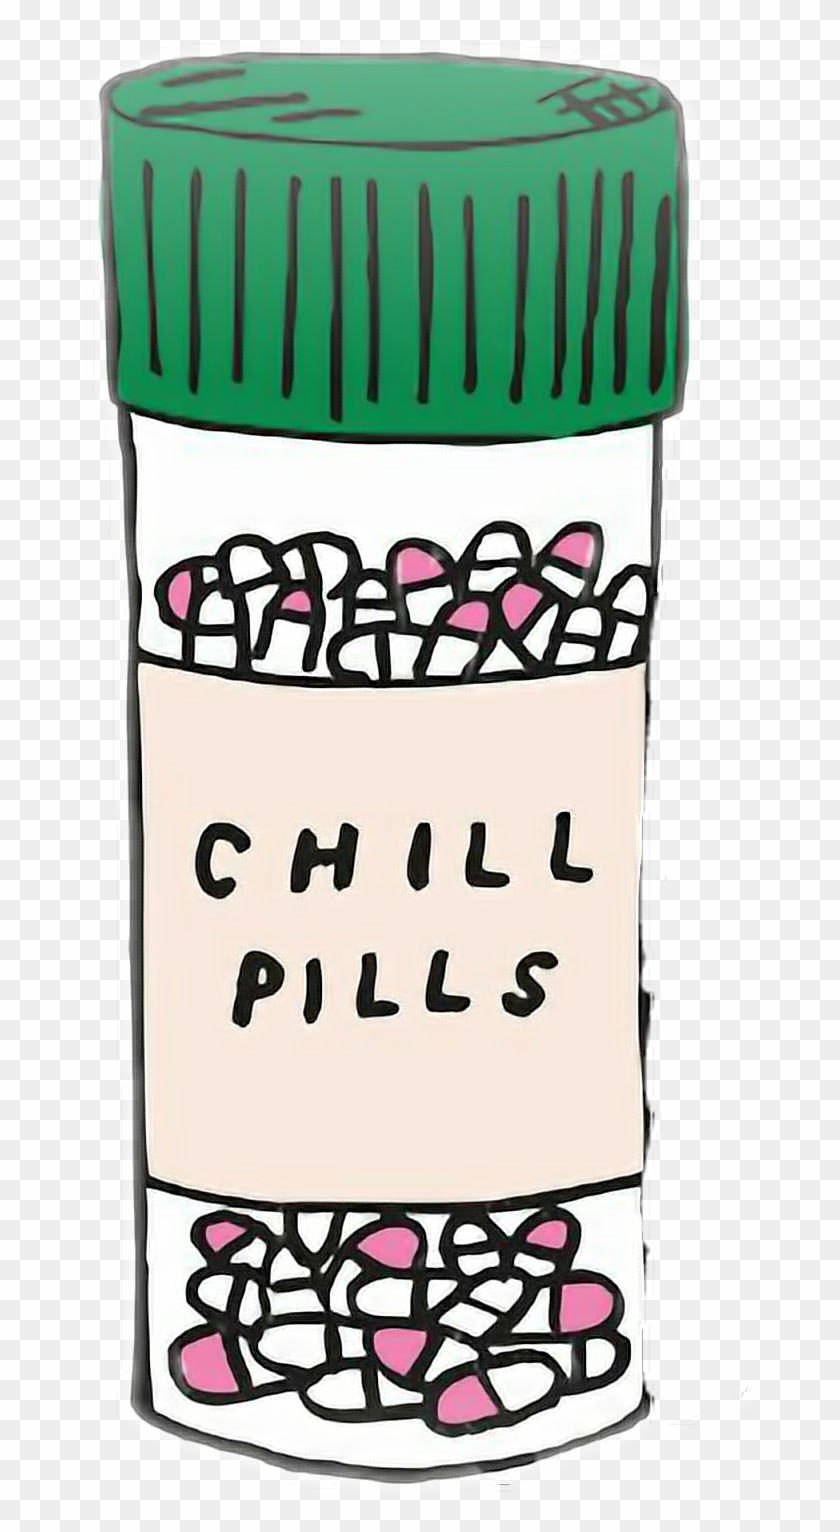 #chillpills #tumblr #cute #pastillas - Chill Pills Drawing Clipart #3414260